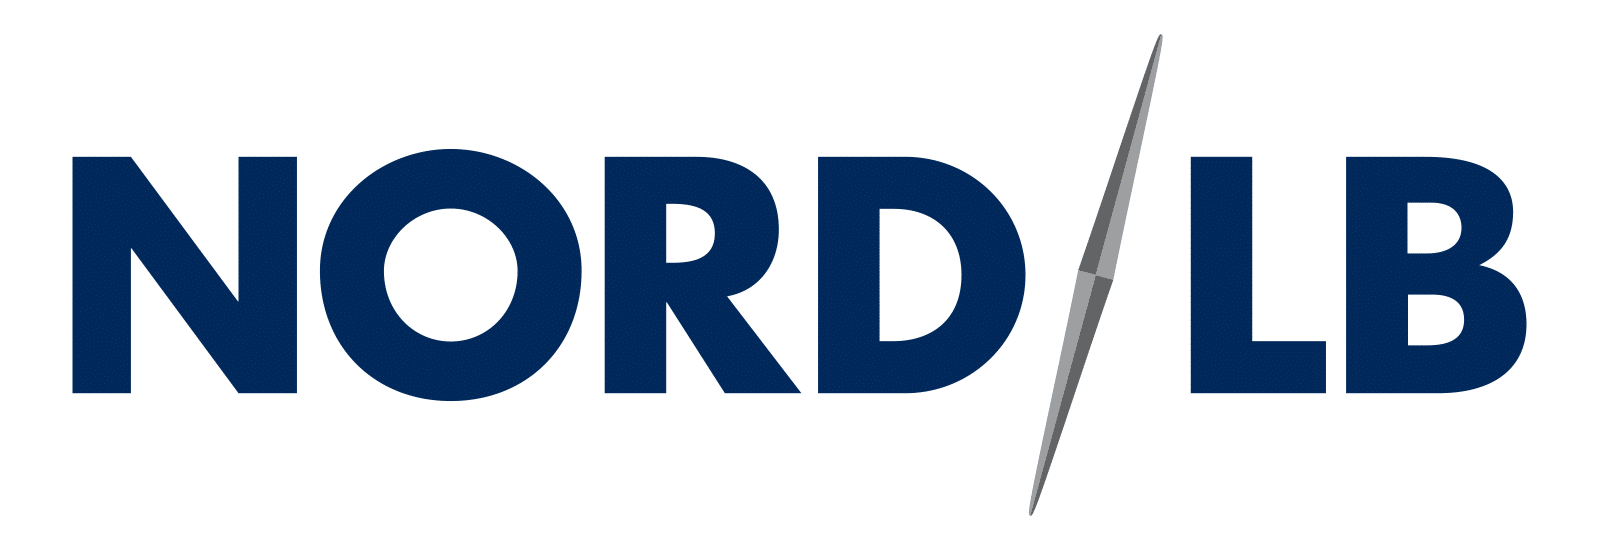 Logo: Nord LB